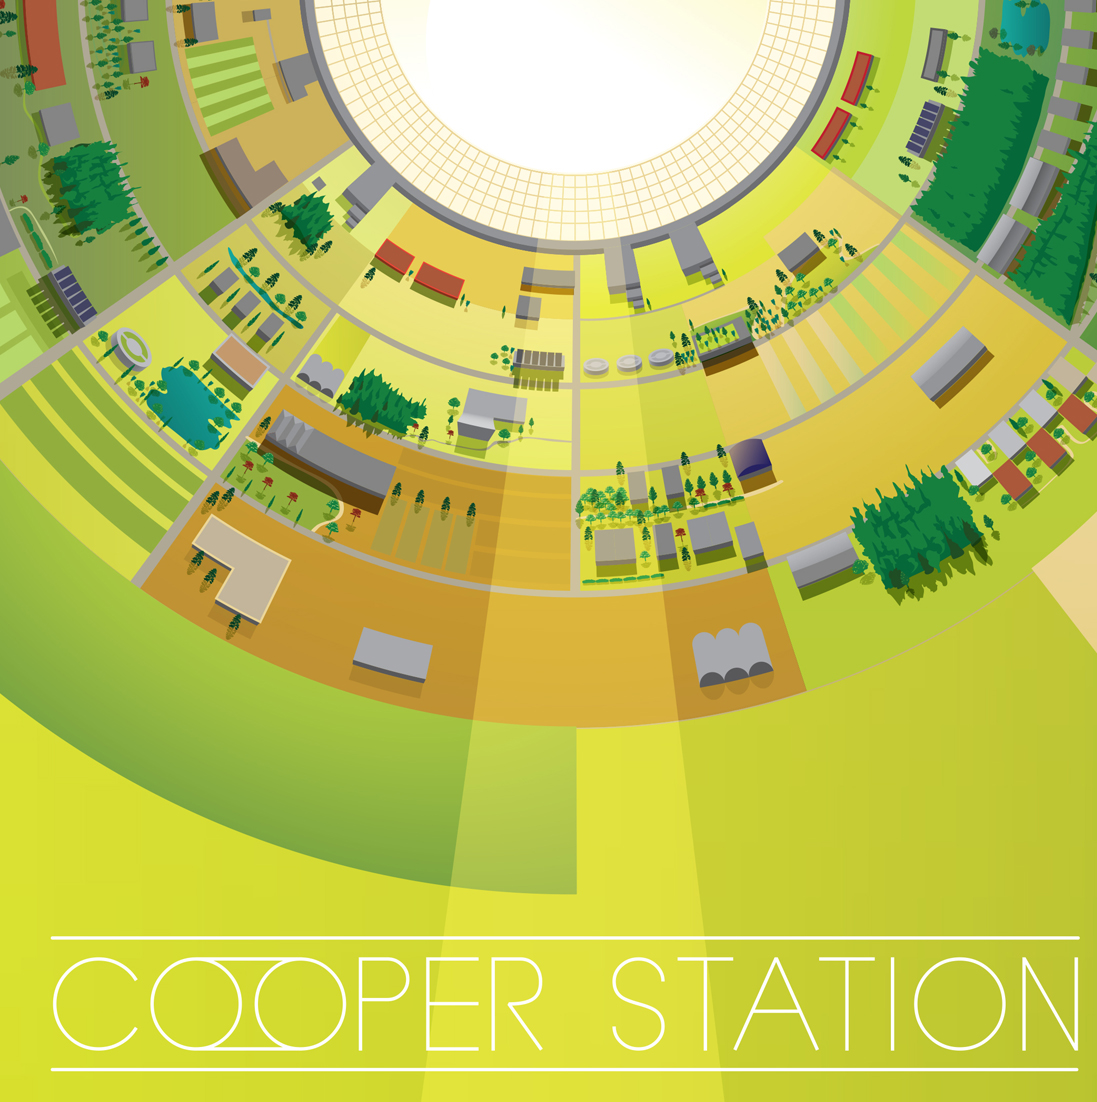 Interstellar Cooper Station